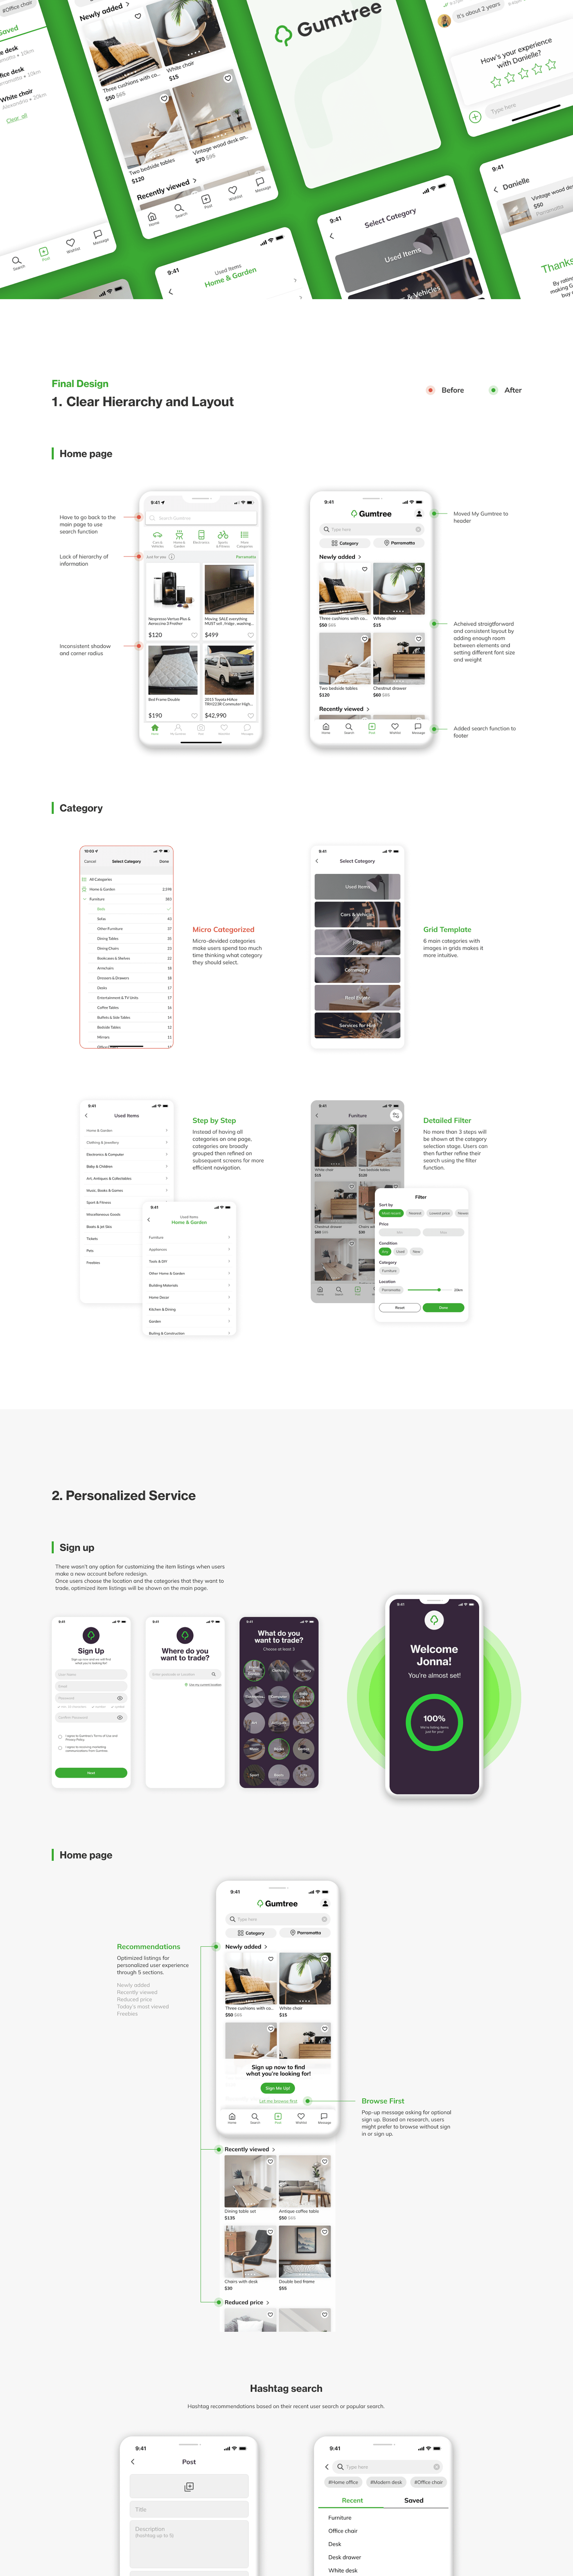 Appdesign CaseStudy Figma gumtree mobile app design portfolio redesign UIUX designer uiuxdesign uiux